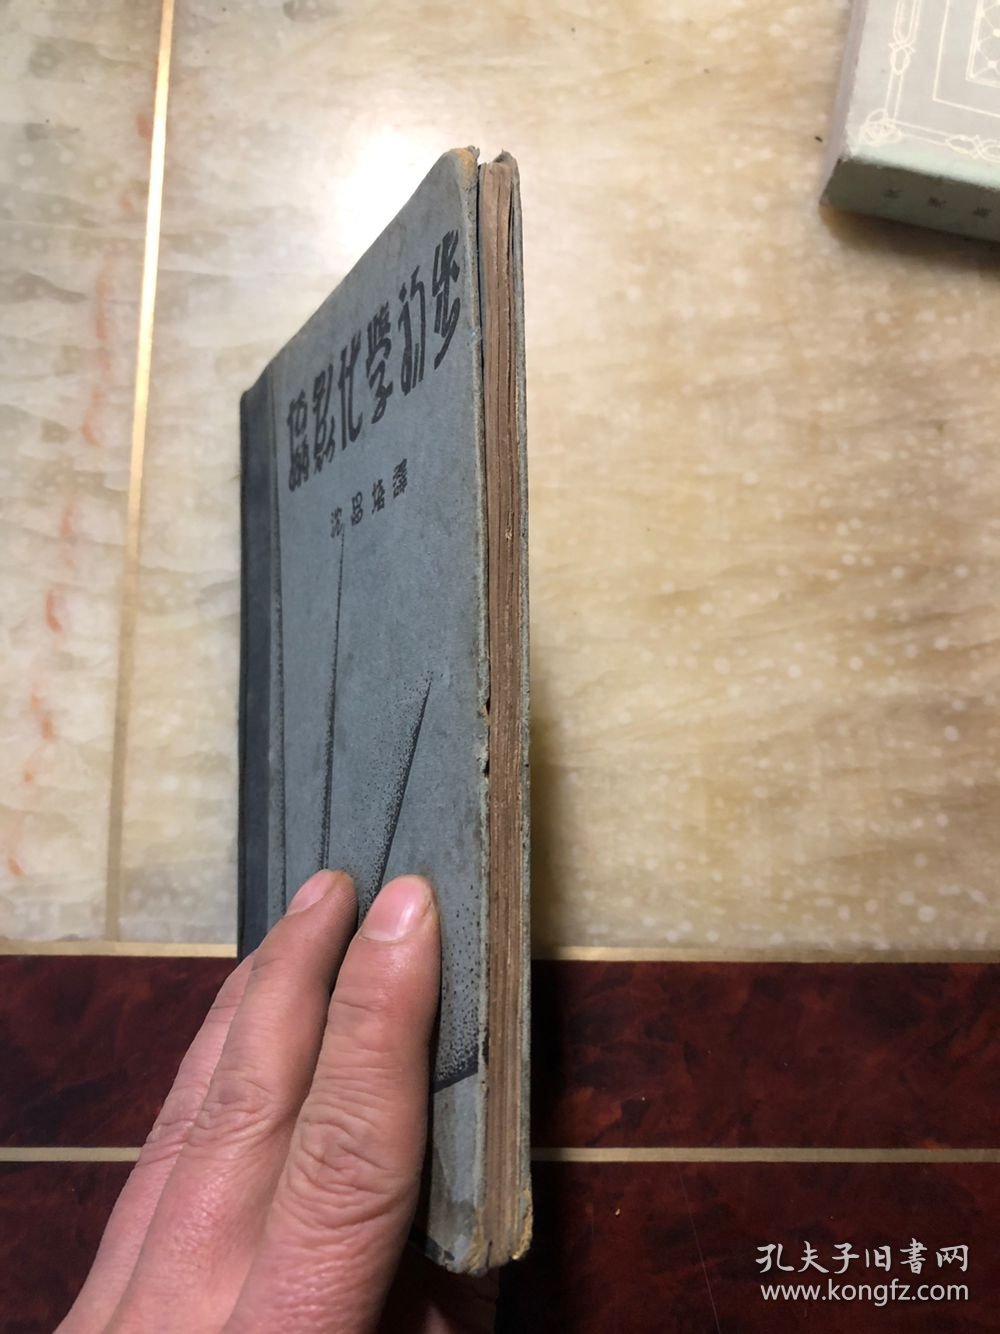 摄影化学初步 民国十九年版（1930年）布脊精装 保存的可以 无缺页  上海柯达公司